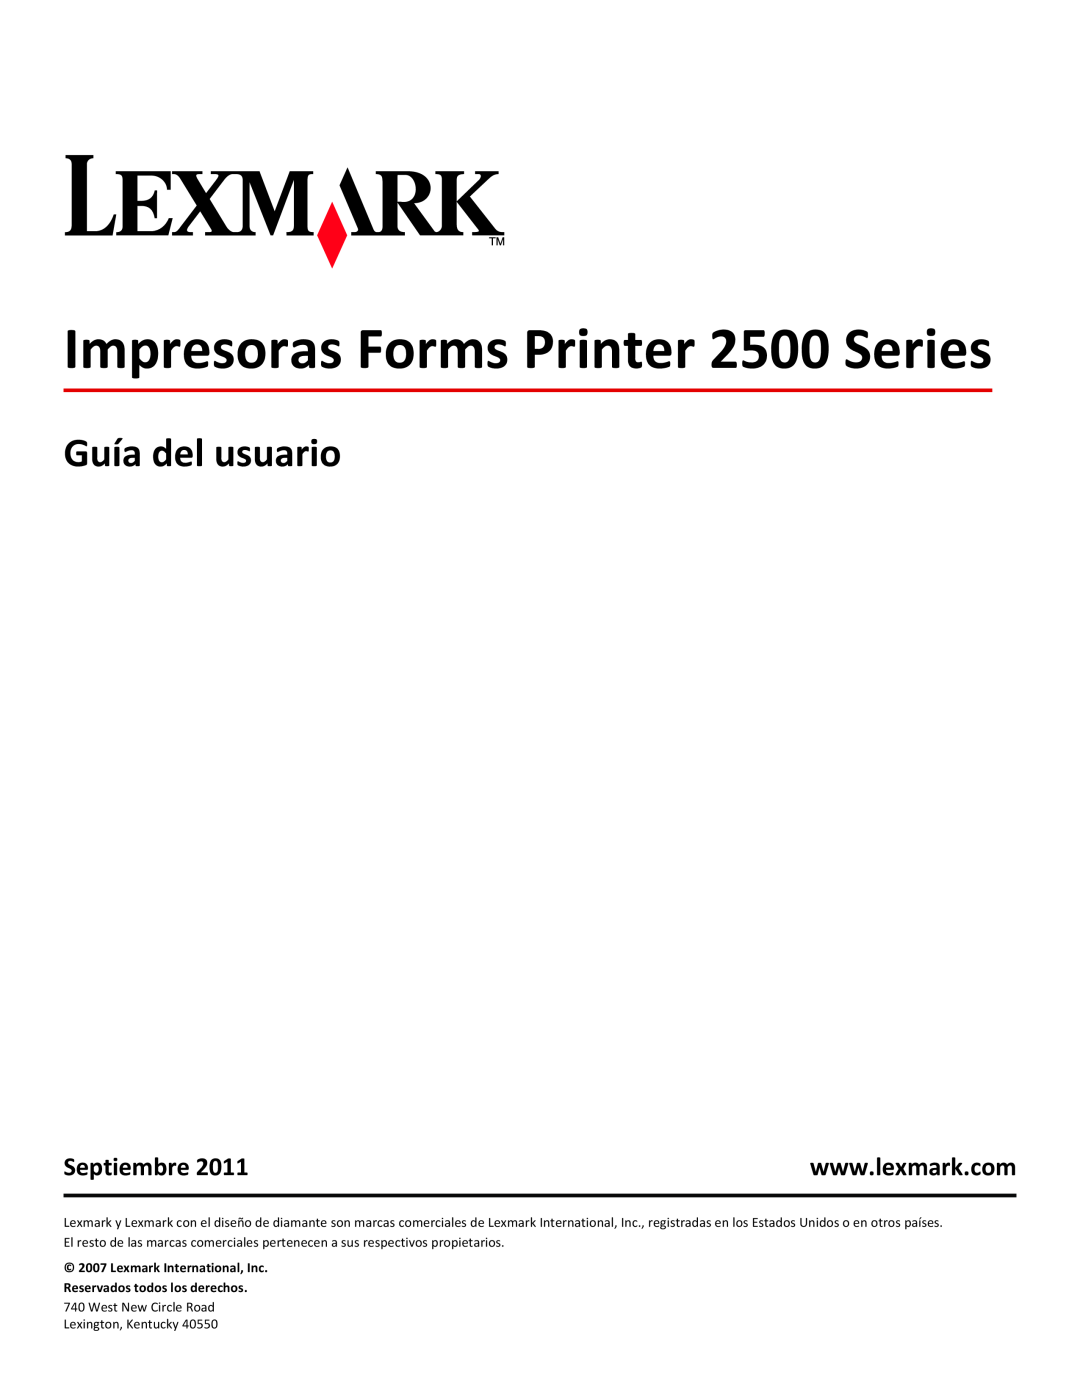 Lexmark manual Guía del usuario, Septiembre, Impresoras Forms Printer 2500 Series 